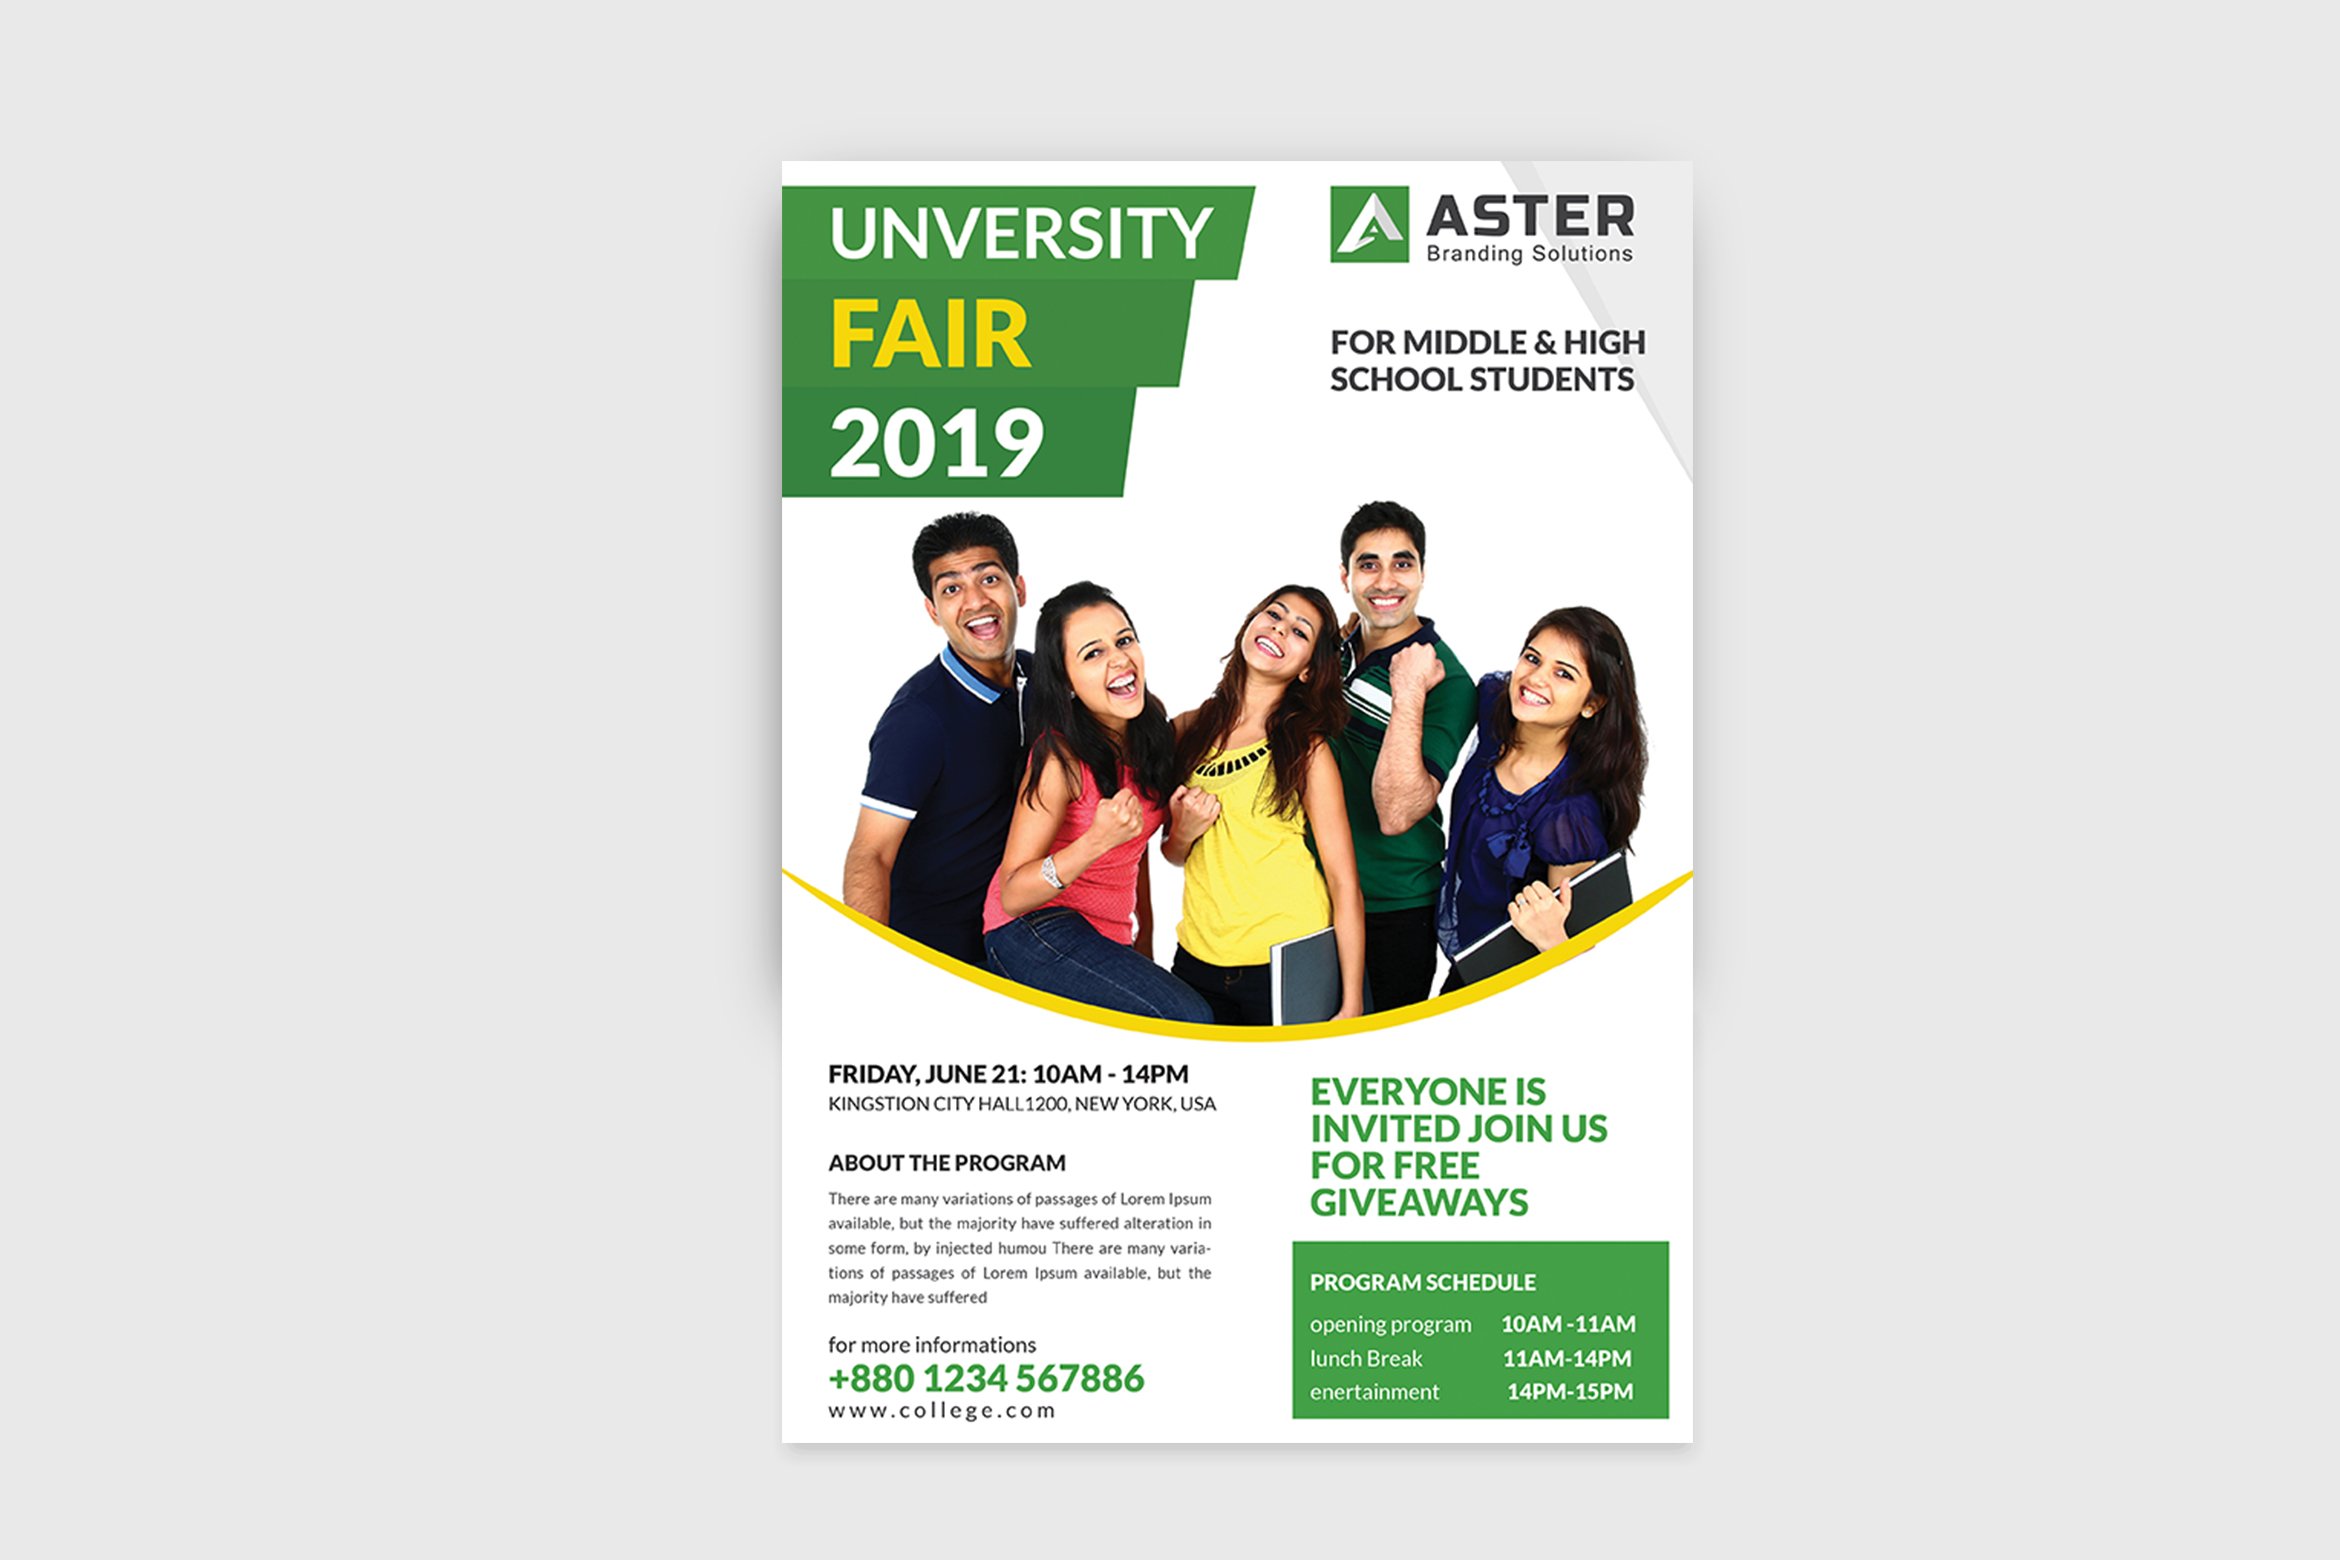 University Fair flyer preview image.